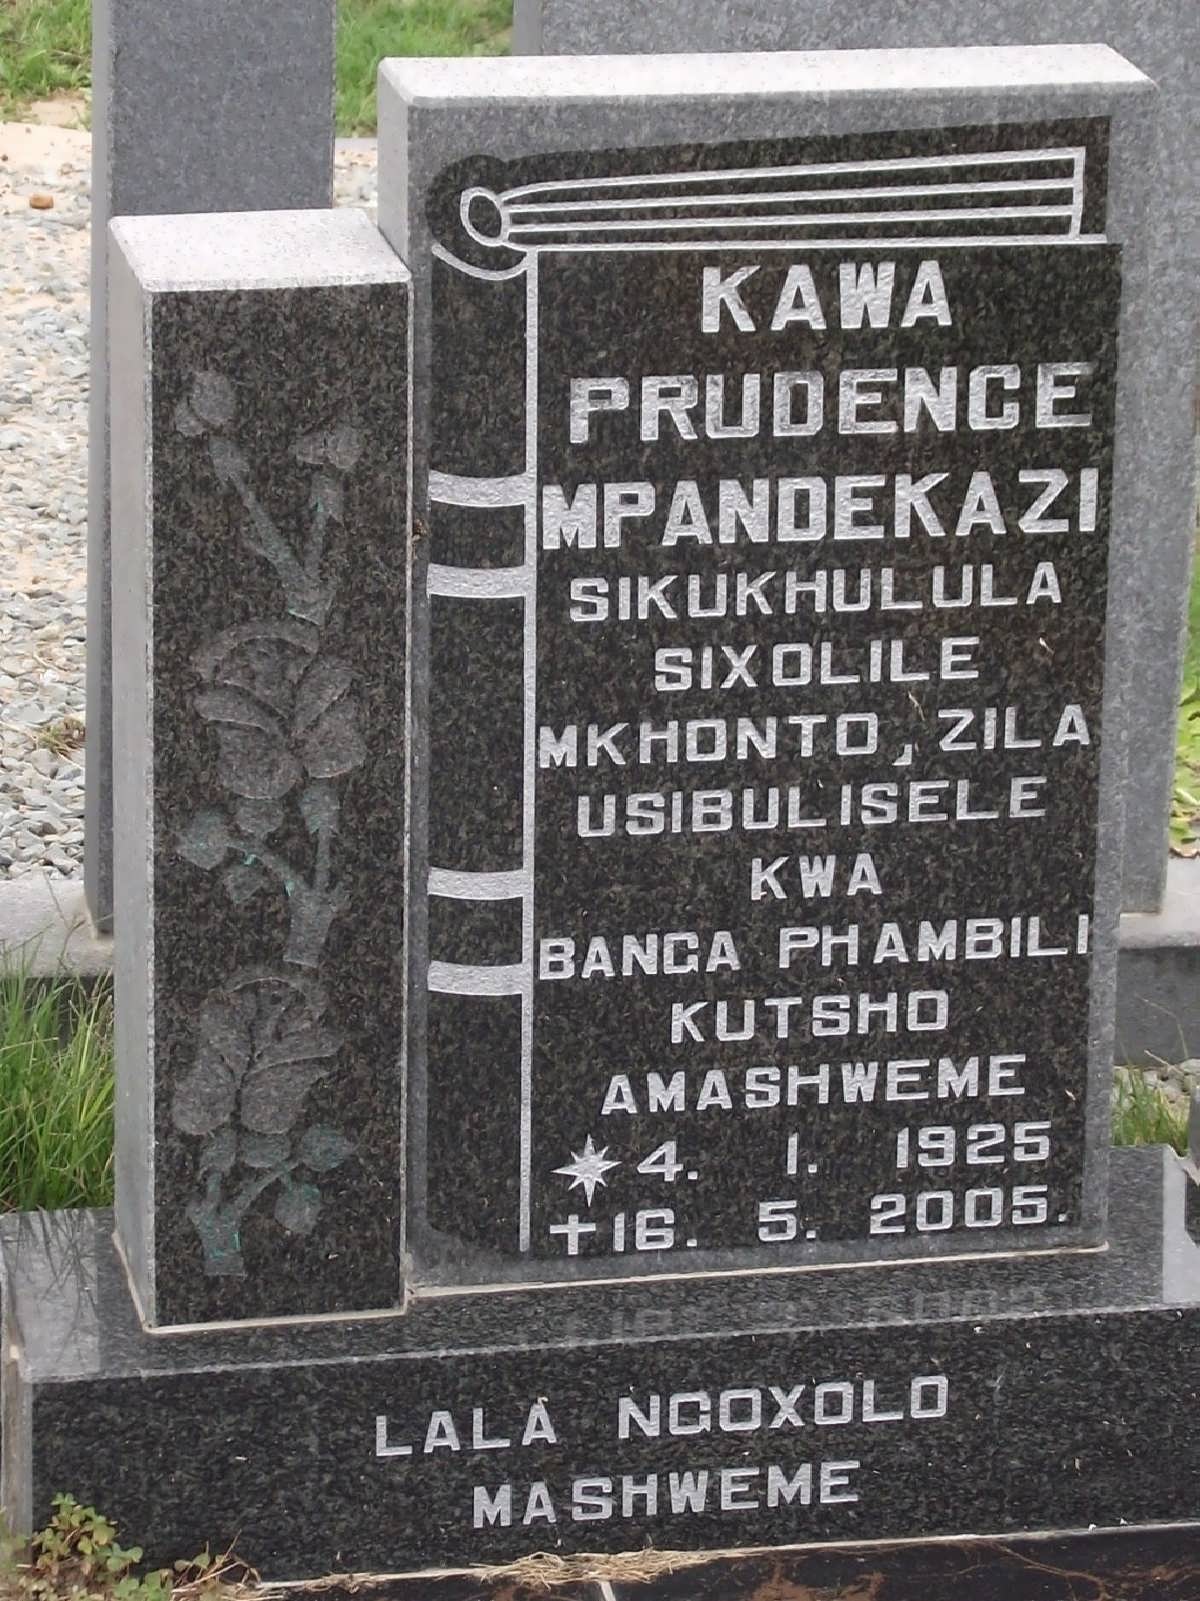 KAWA Prudence Mpandekazi 1925-2005